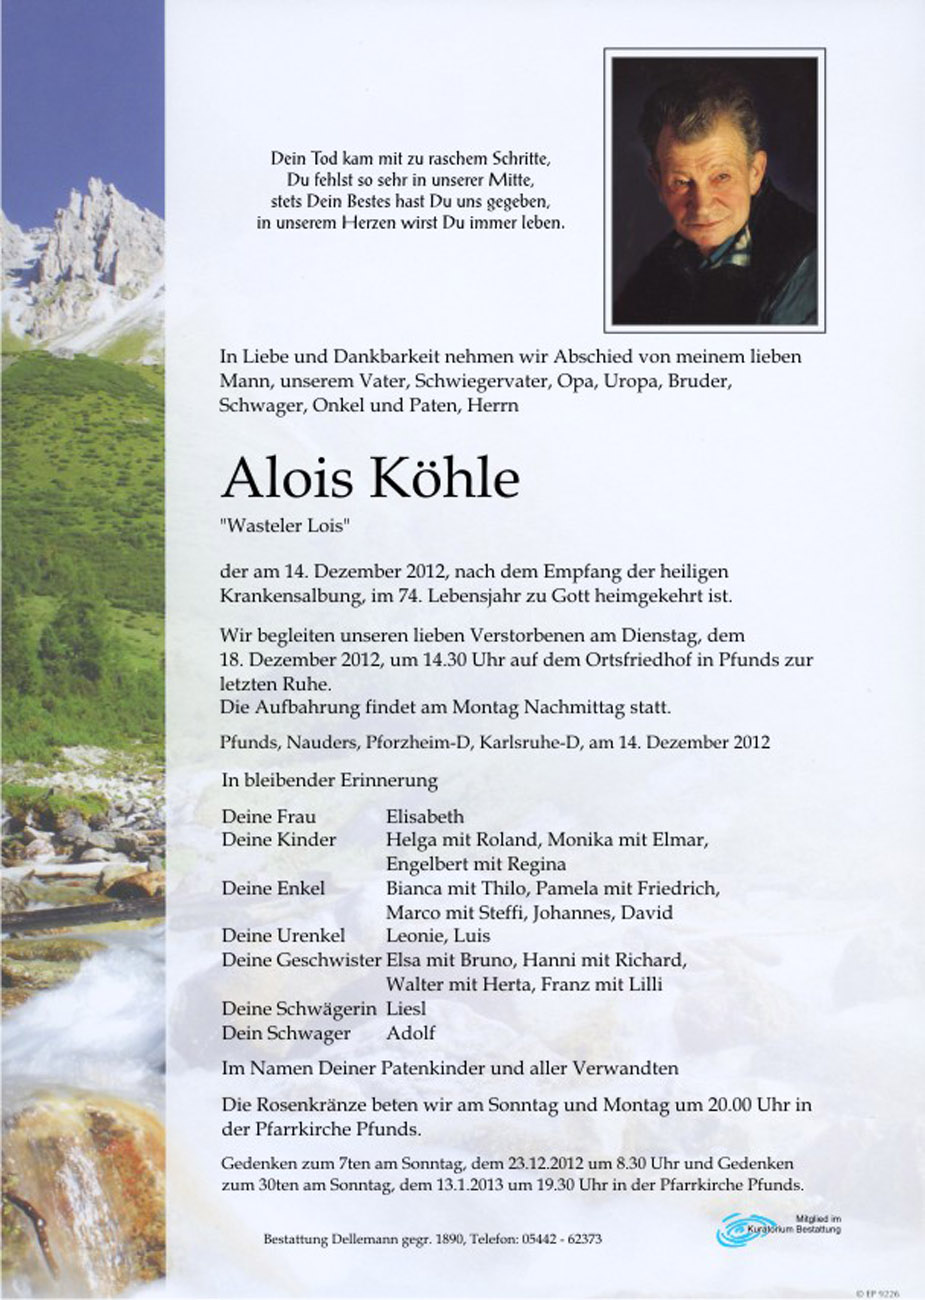   Alois Köhle